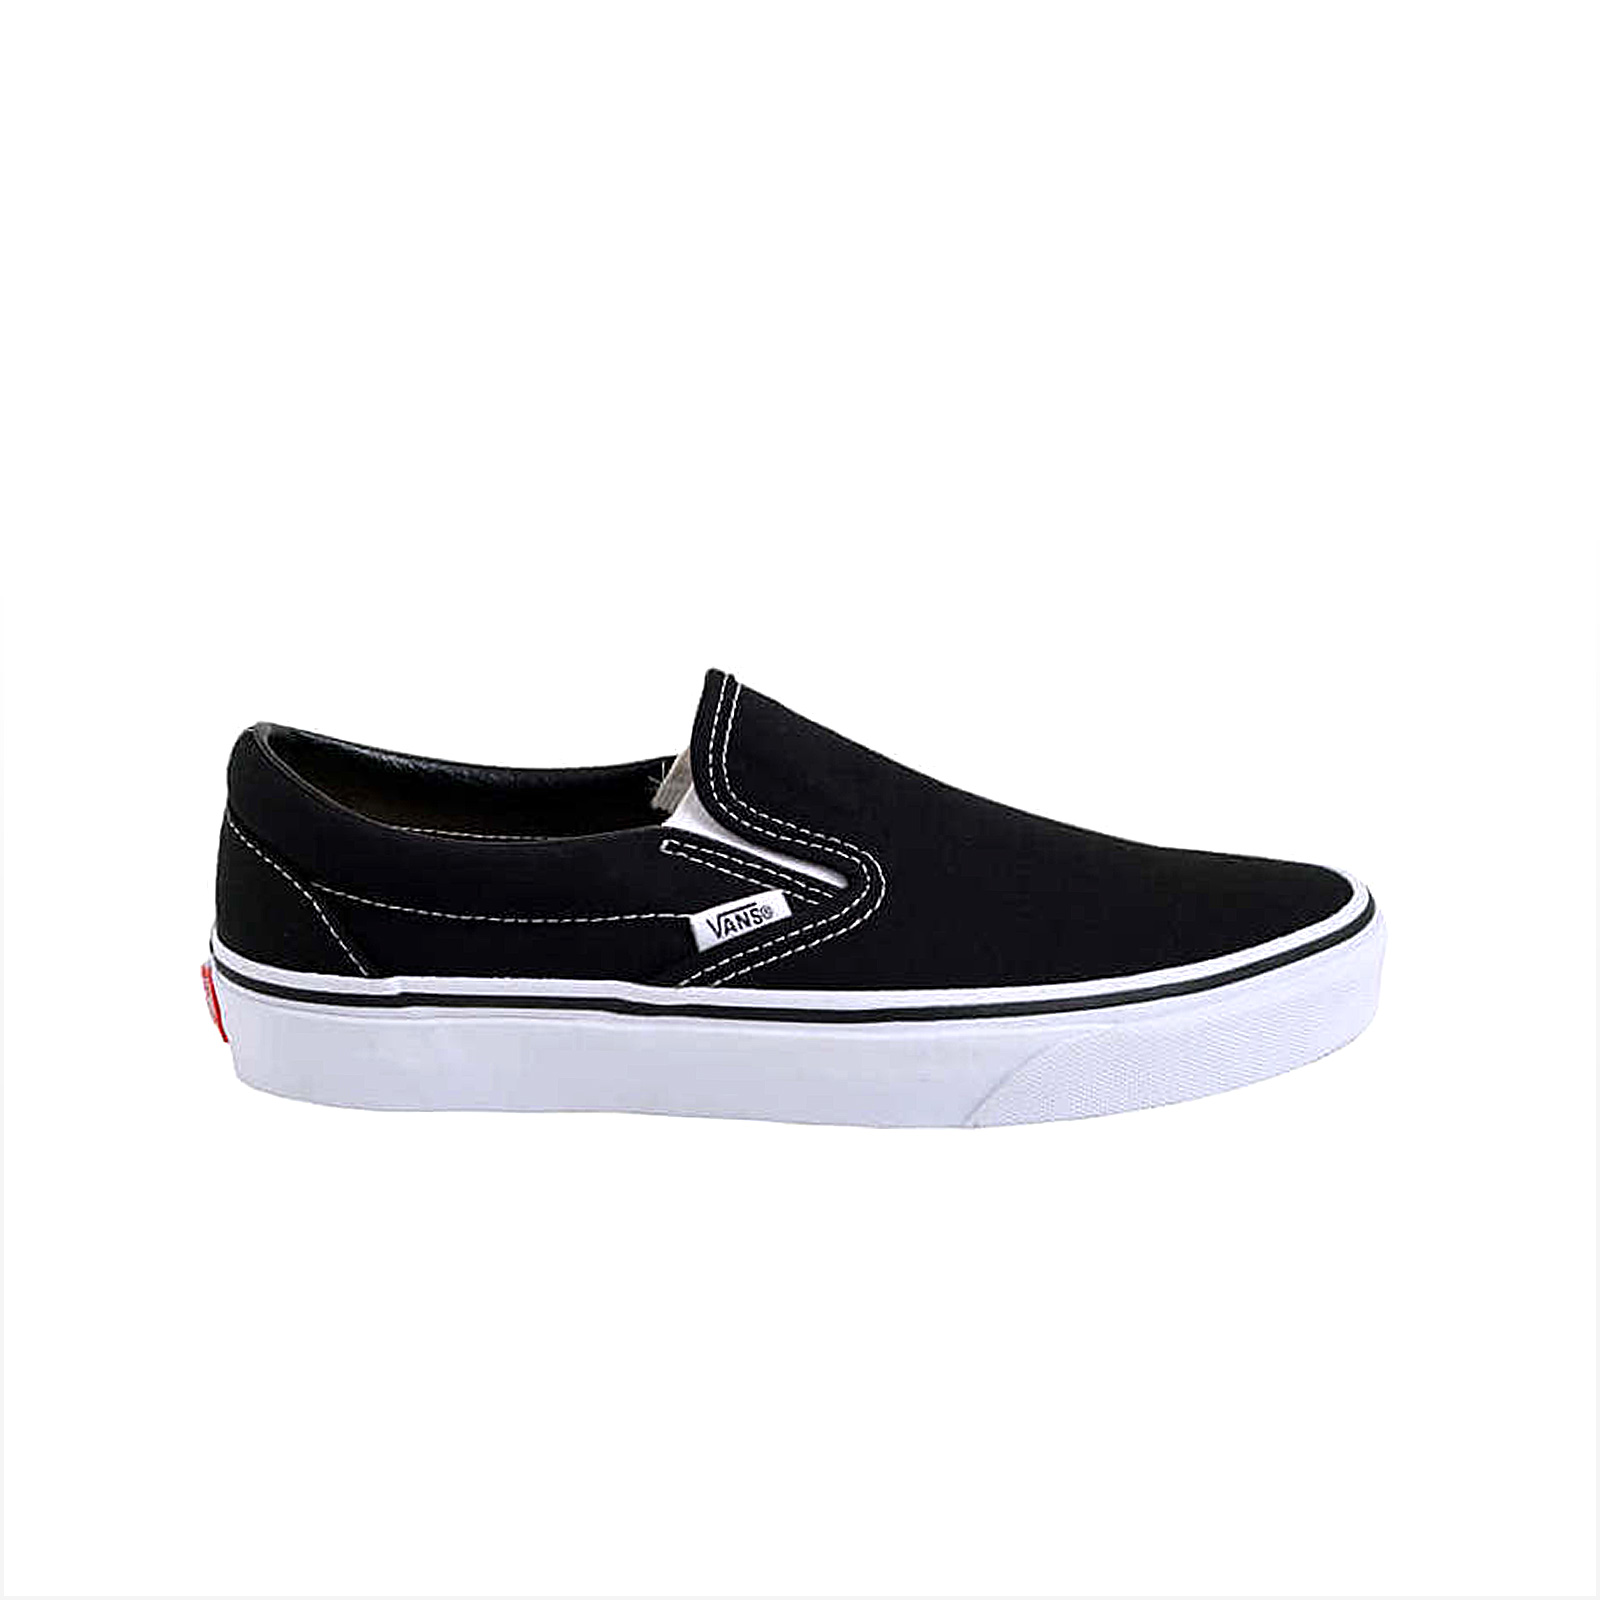 Ανδρικά > Παπούτσια > Sneaker > Παπούτσι Low Cut Vans - UA CLASSIC SLIP-ON - BLACK